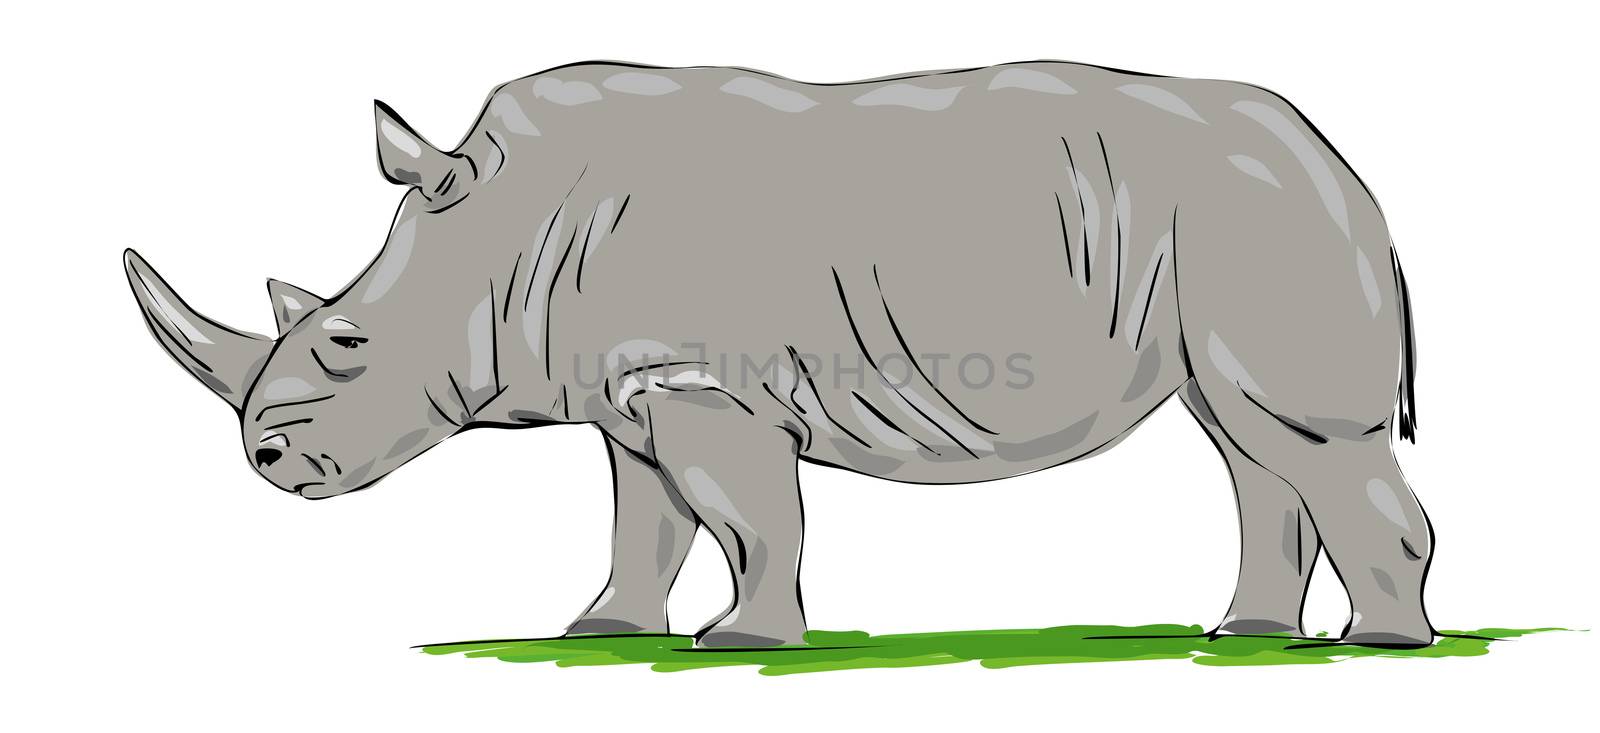 rhino by magann